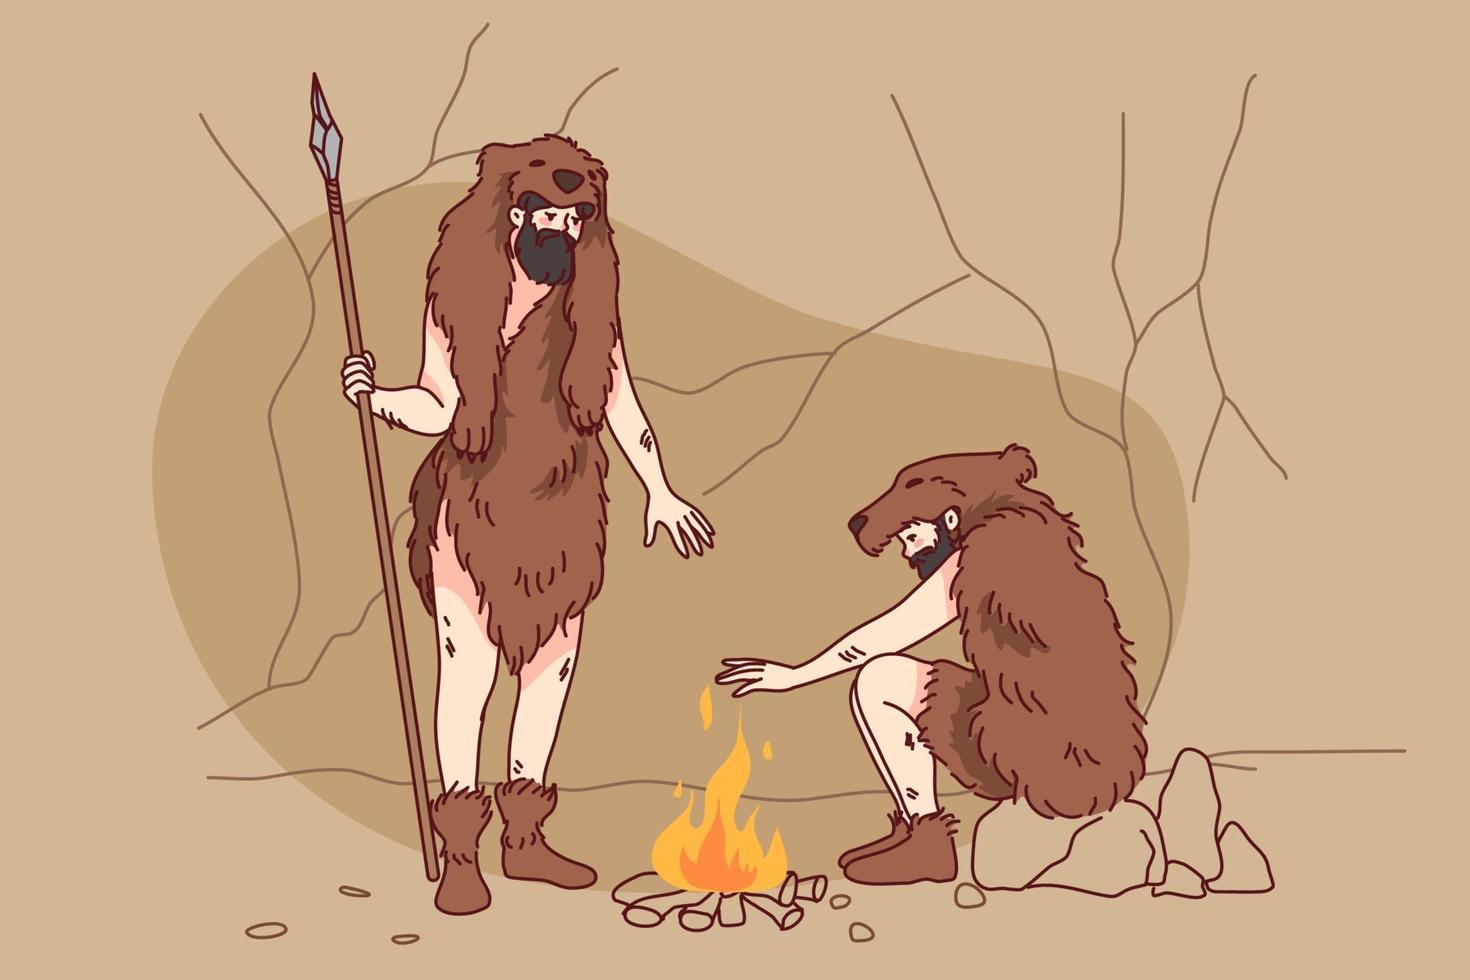 Höhlenmenschen im Tier Pelz Kleider Rahmen Feuer außen. Stammes- Männer Herstellung Lagerfeuer während uralt Alter draußen. eben Vektor Illustration.